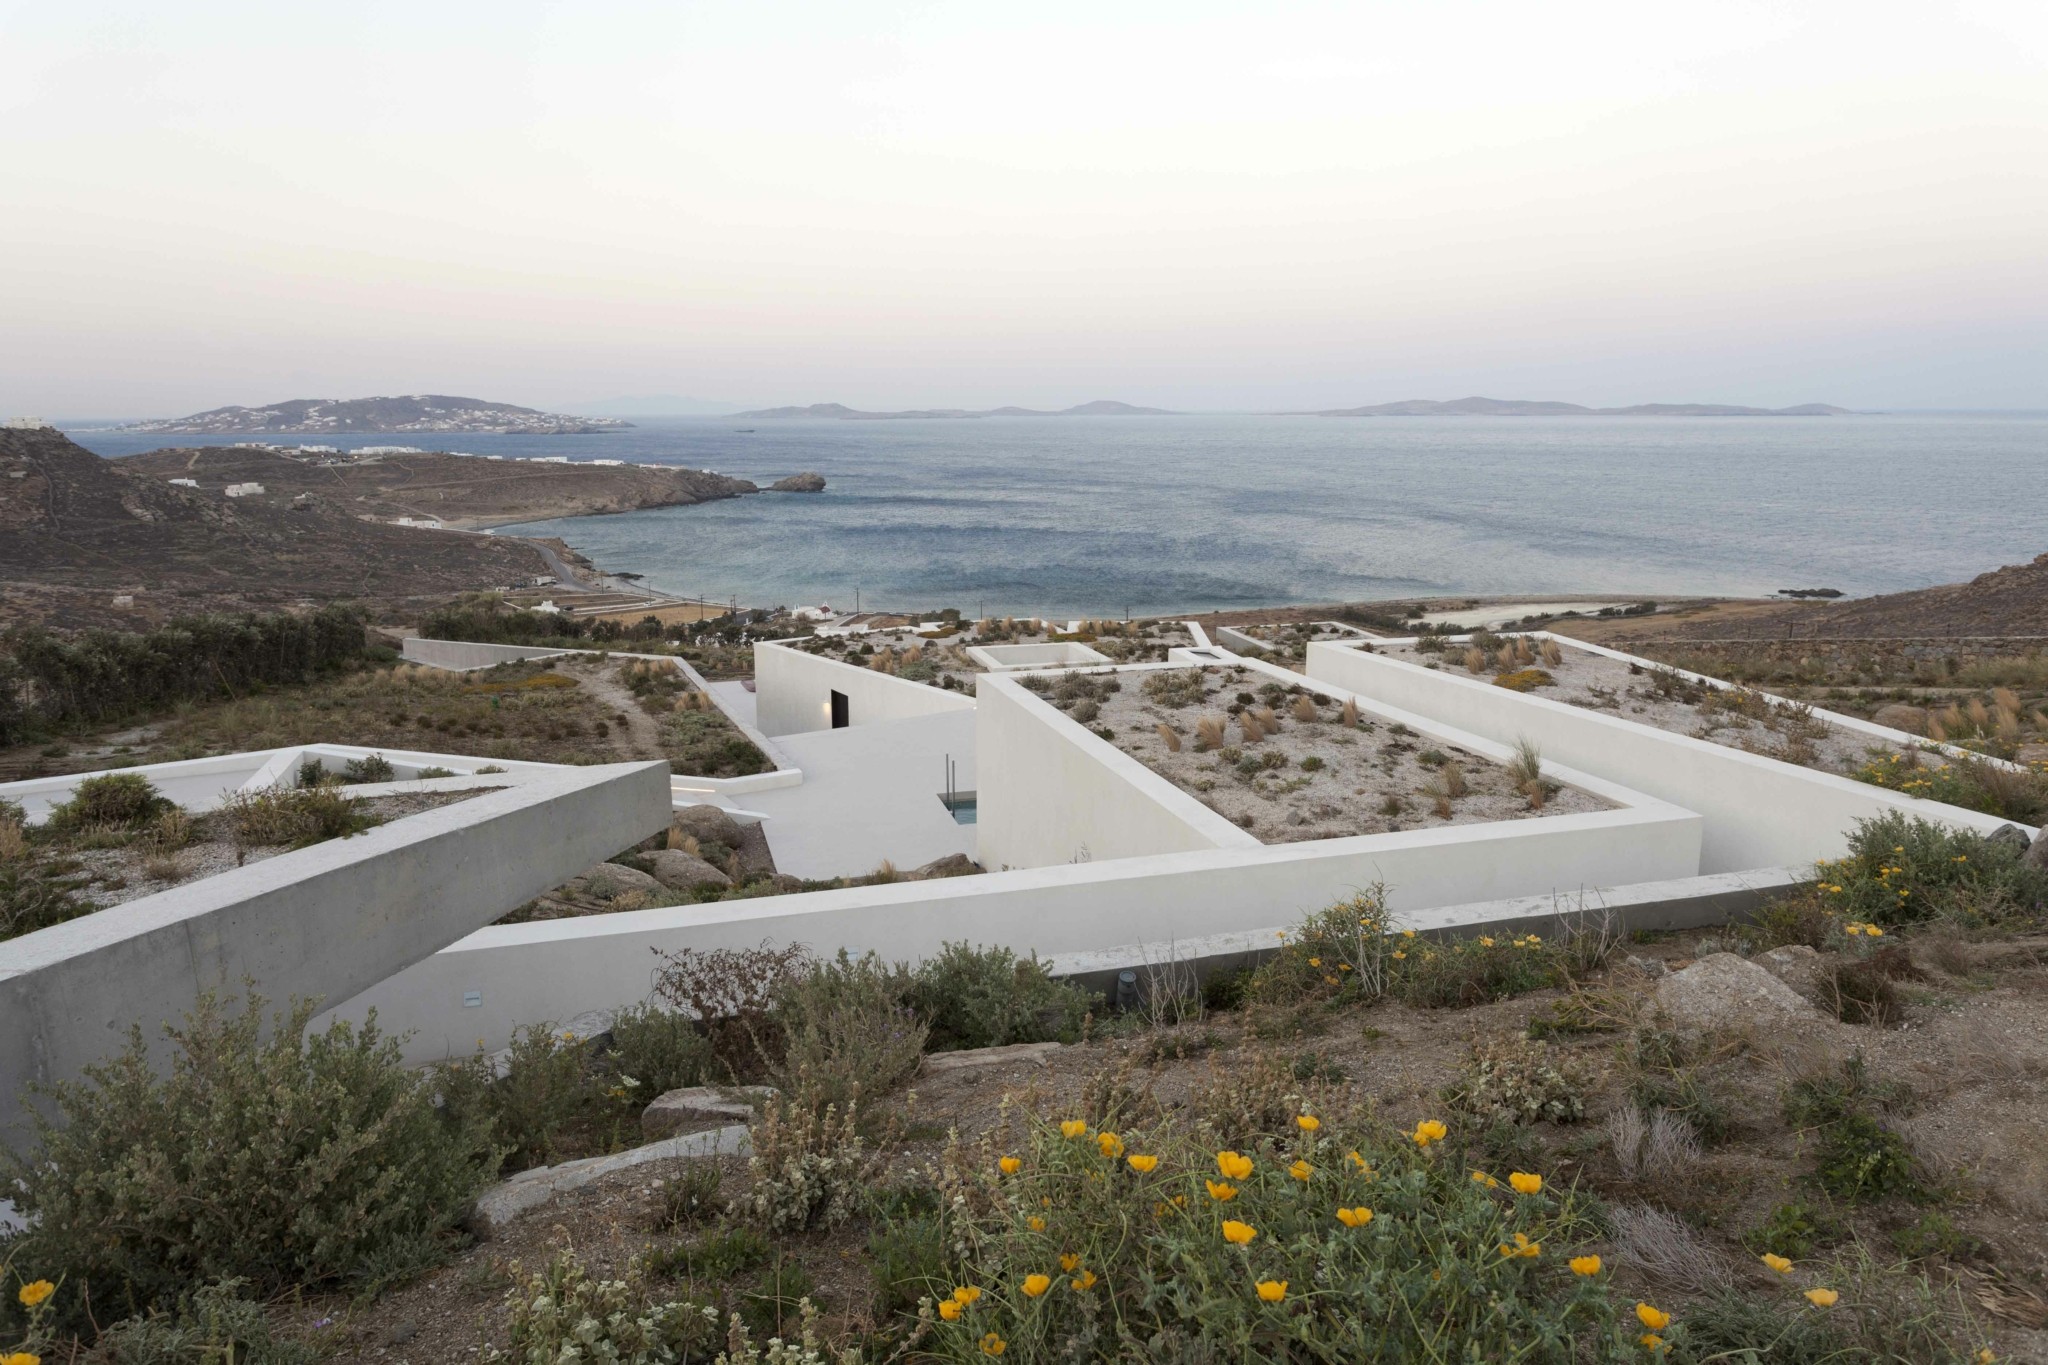 Οι 13 ελληνικές υποψηφιότητες για τα ευρωπαϊκά “Οσκαρ” αρχιτεκτονικής: Κορυφαία έργα σε όλη την χώρα